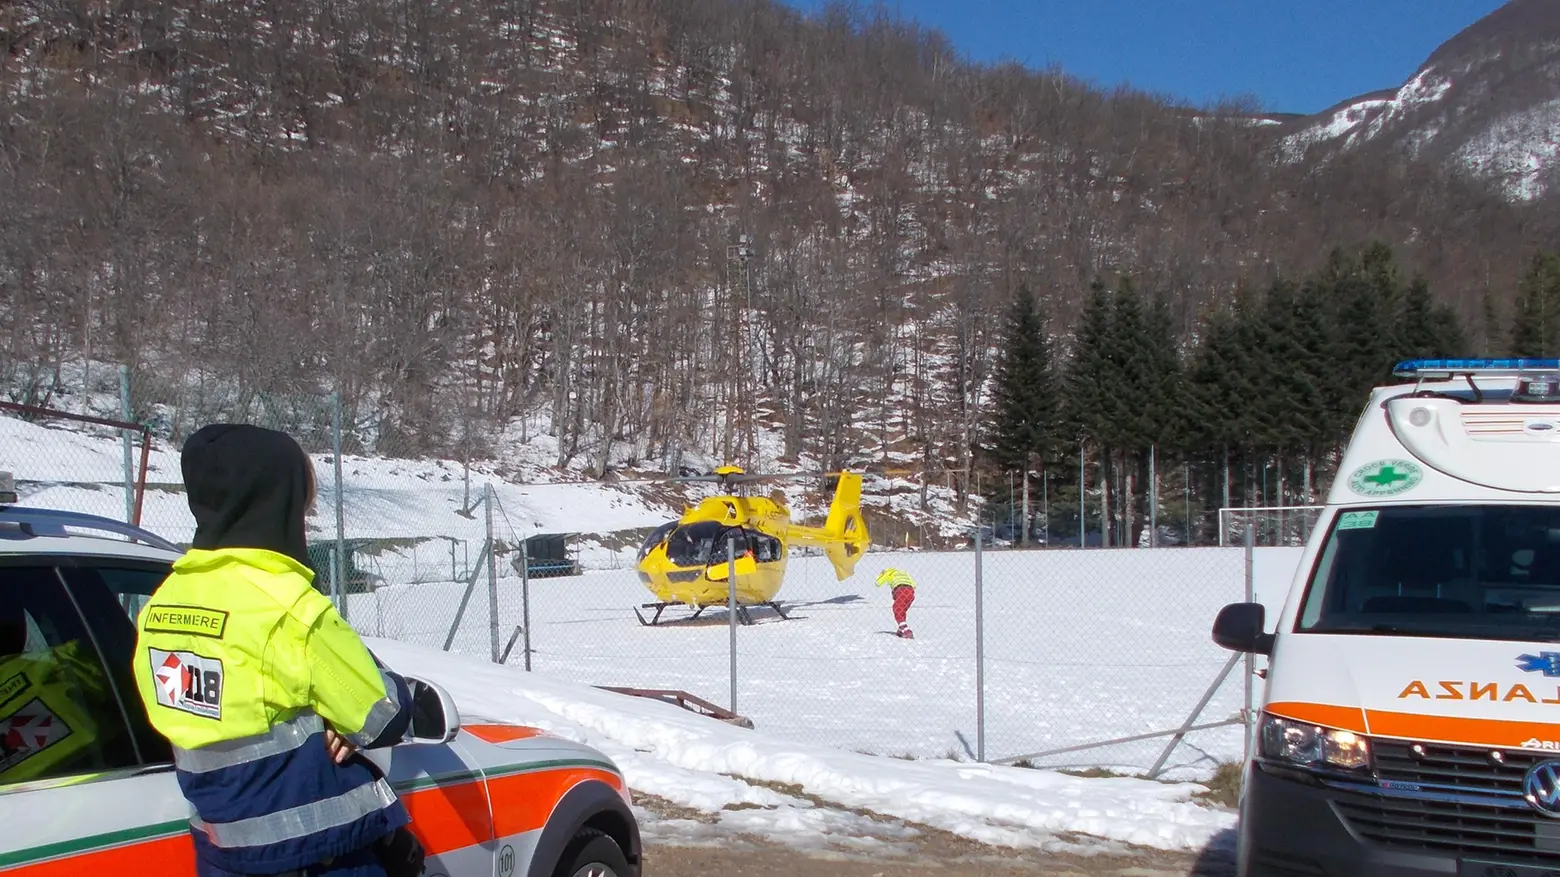 Si taglia due dita con la sega circolare  Portato in elicottero all’ospedale di Modena